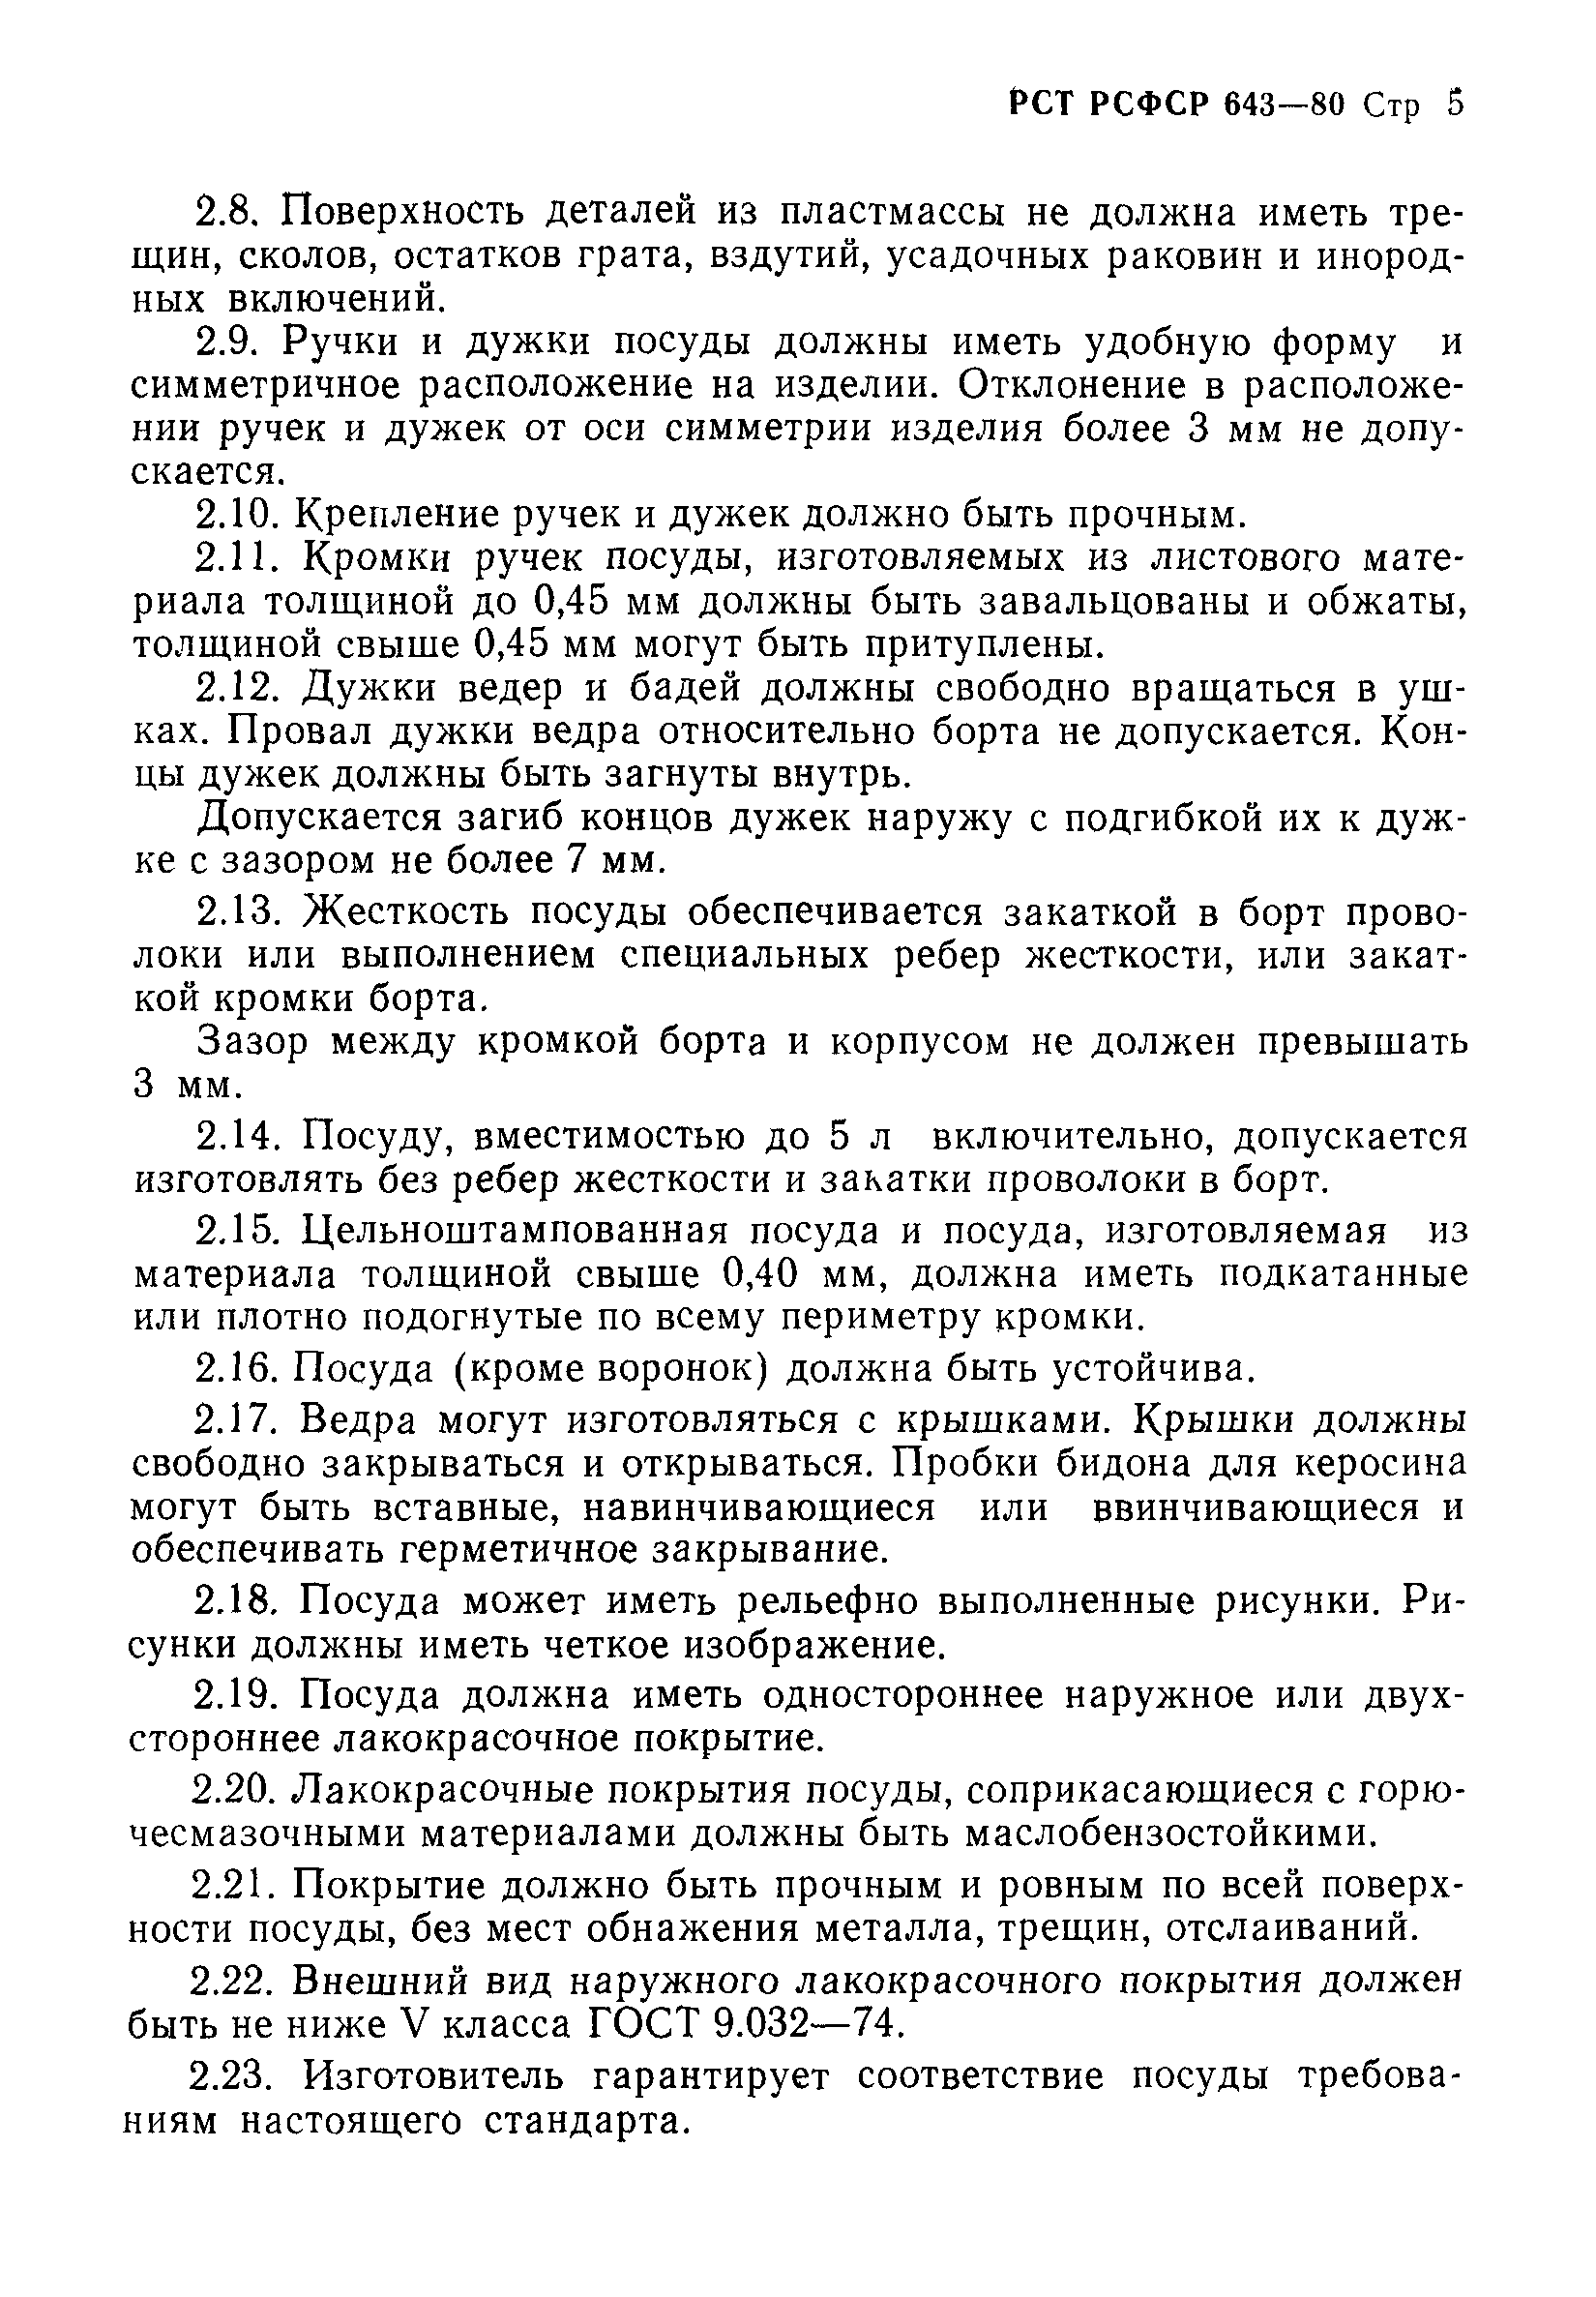 РСТ РСФСР 643-80